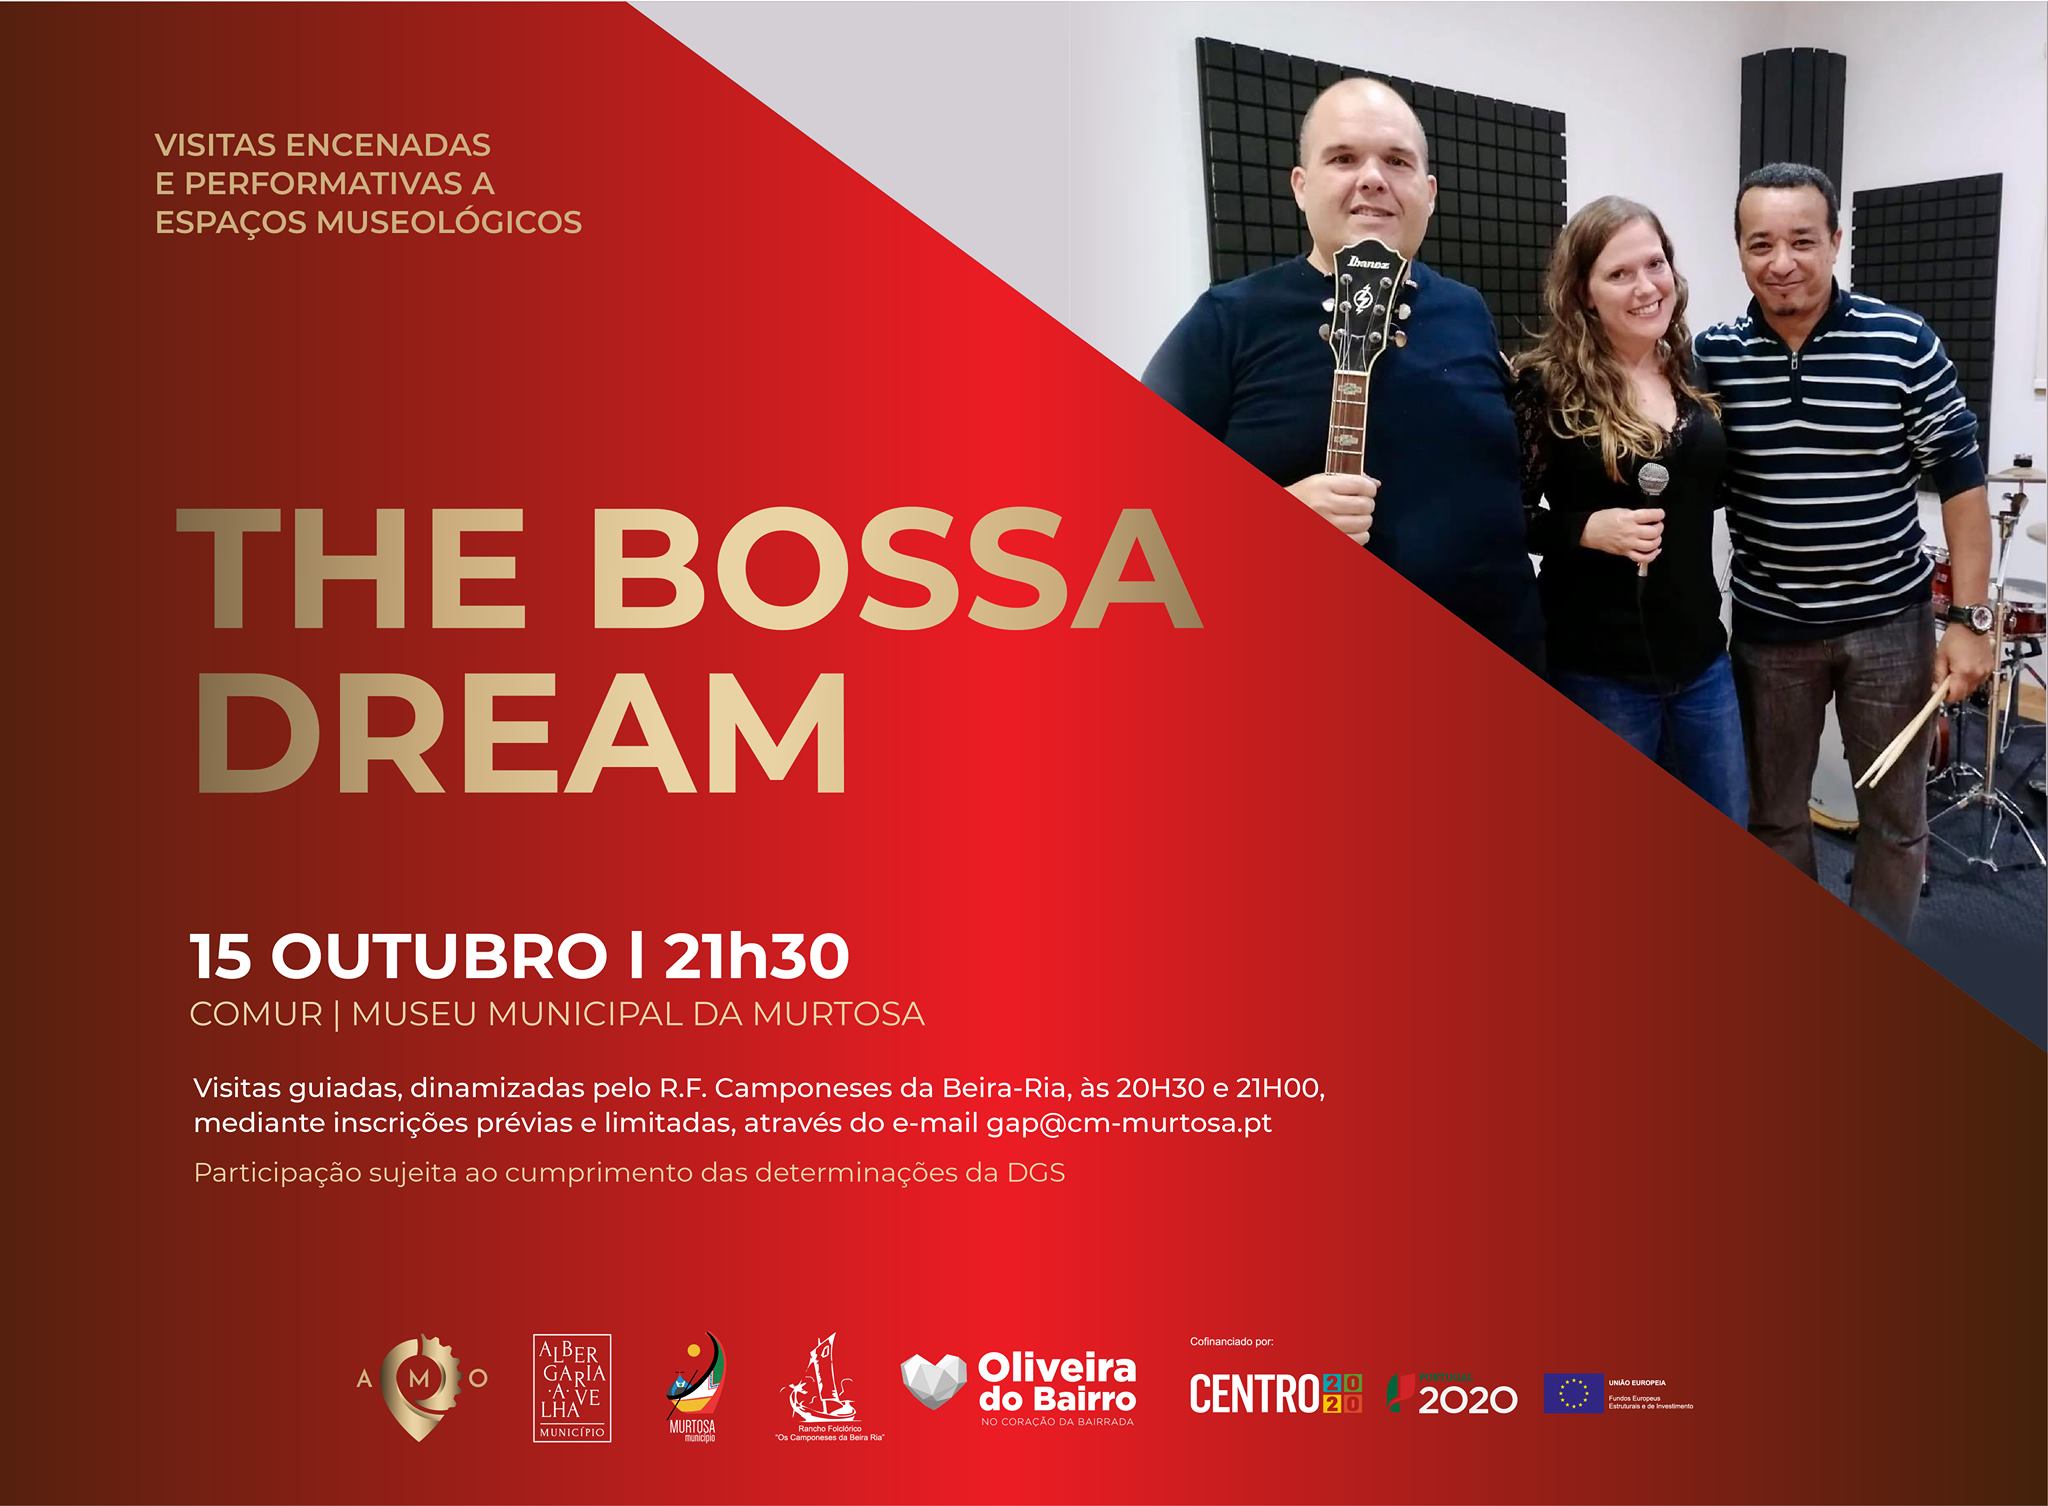 Visita Encenada e Performativa com concerto de The Bossa Dream